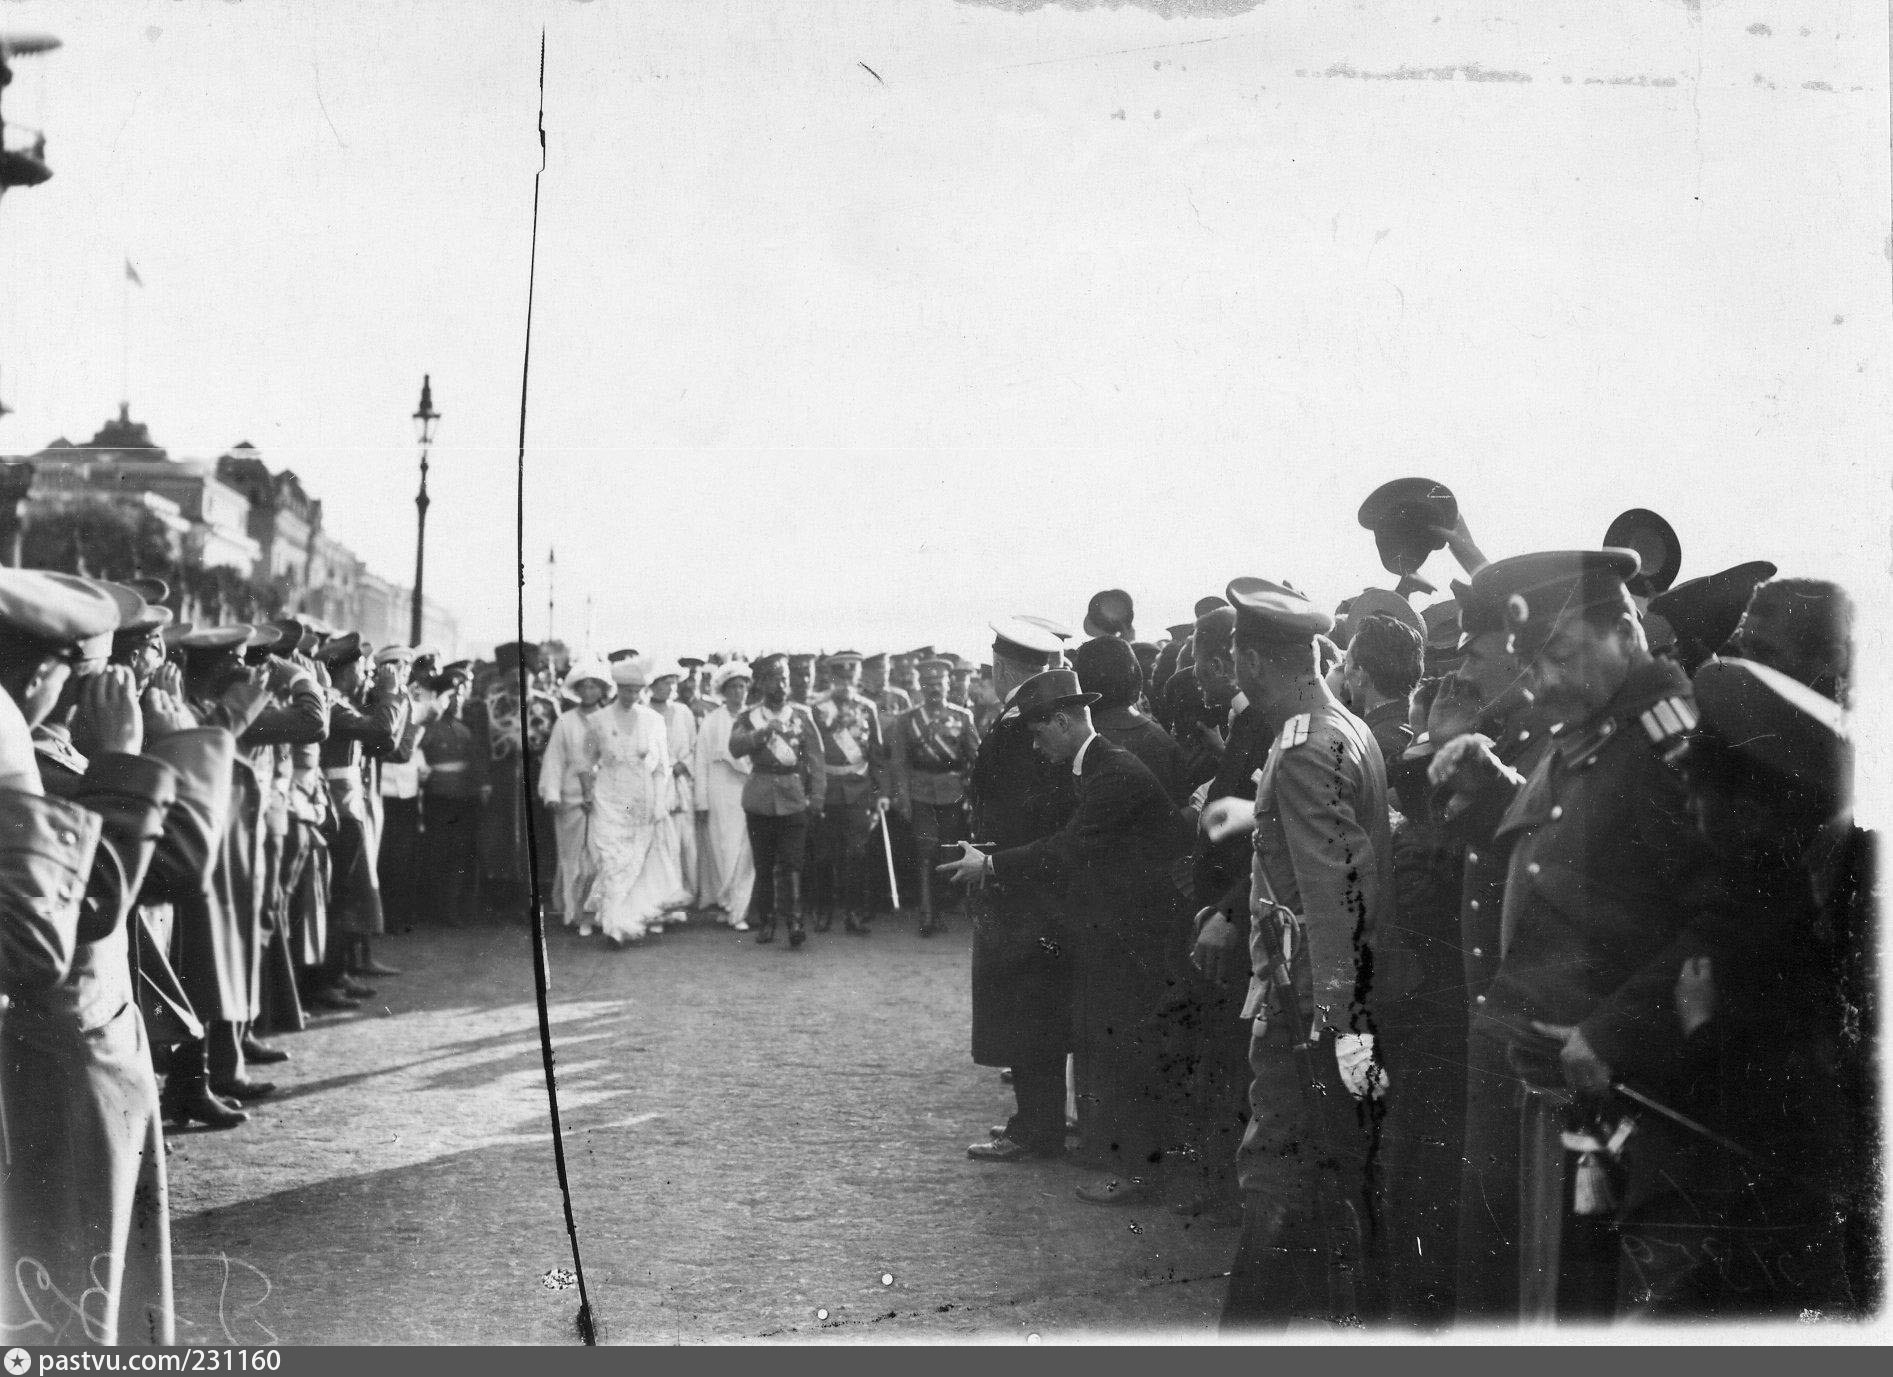 Мобилизация демонстрации. Дворцовая площадь объявление войны 1914.